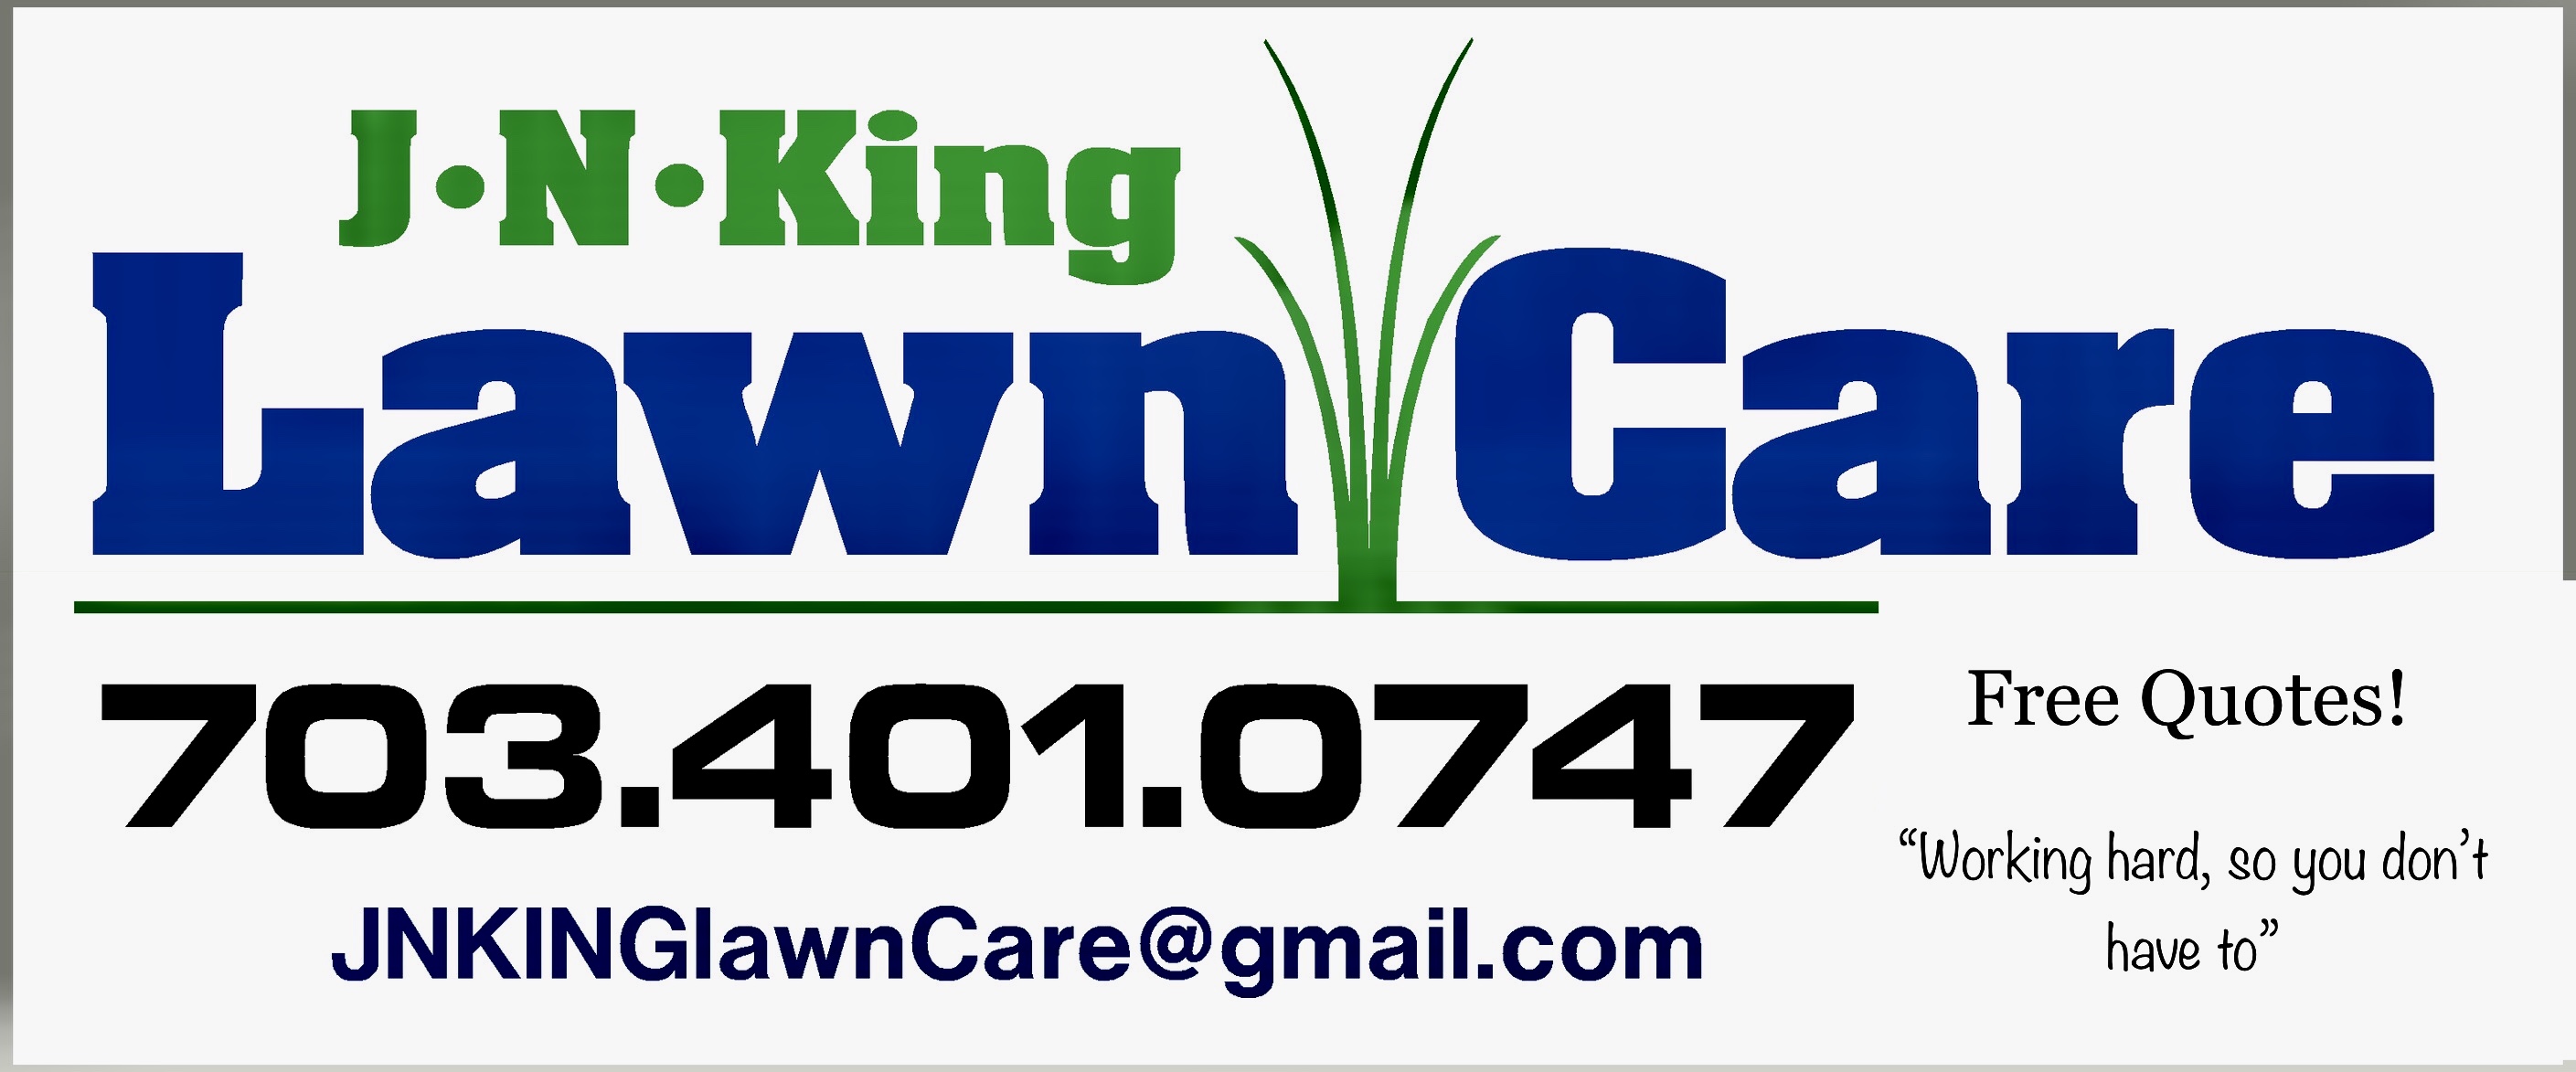 J.N. King Lawn Care Logo